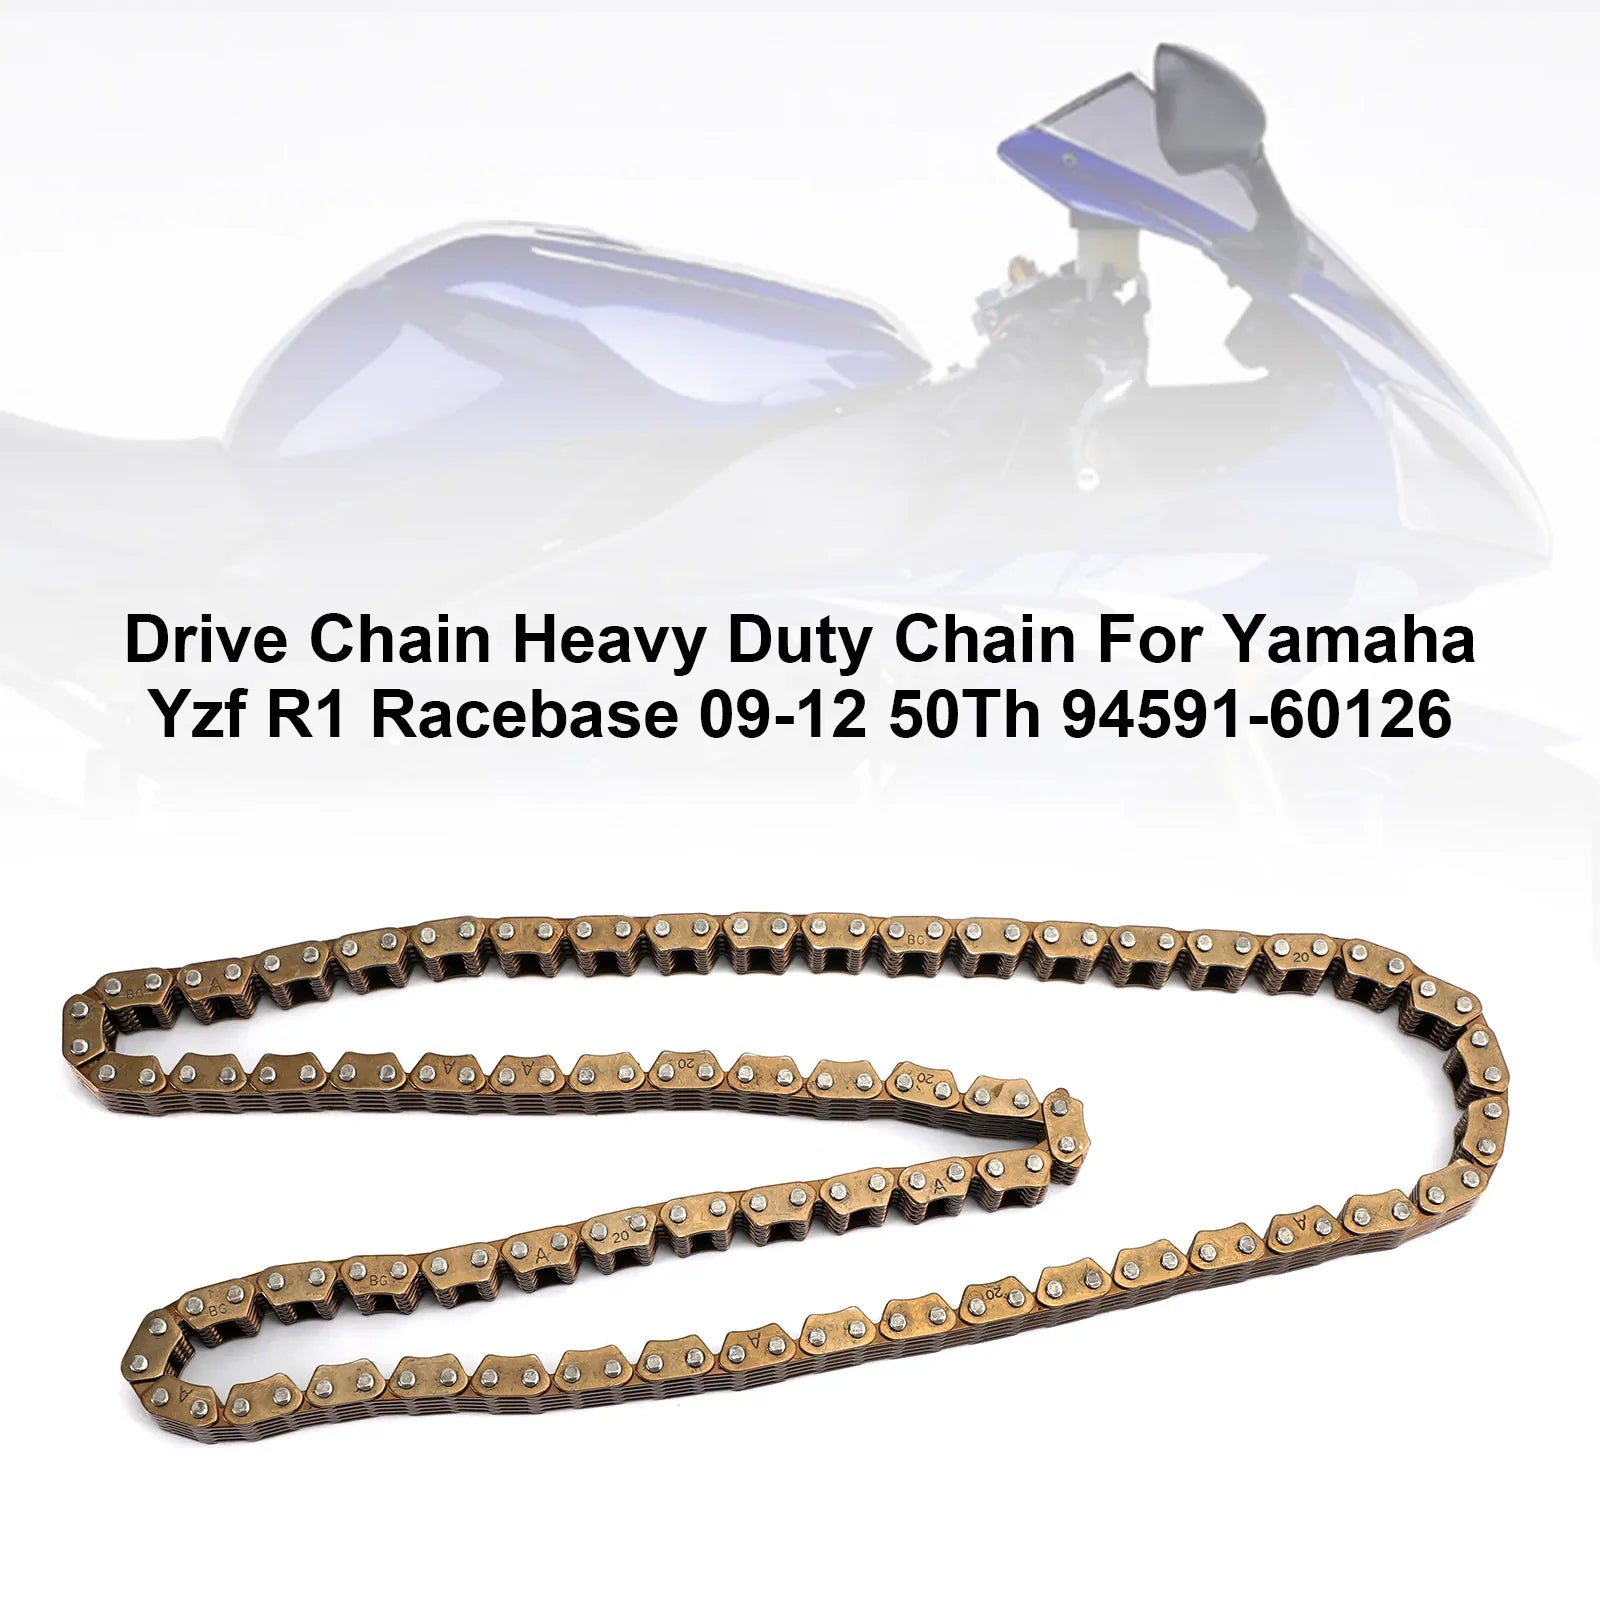 2009-2012 Yamaha Yzf R1 Racebase 50Th 94591-60126 Chaîne de distribution lourde